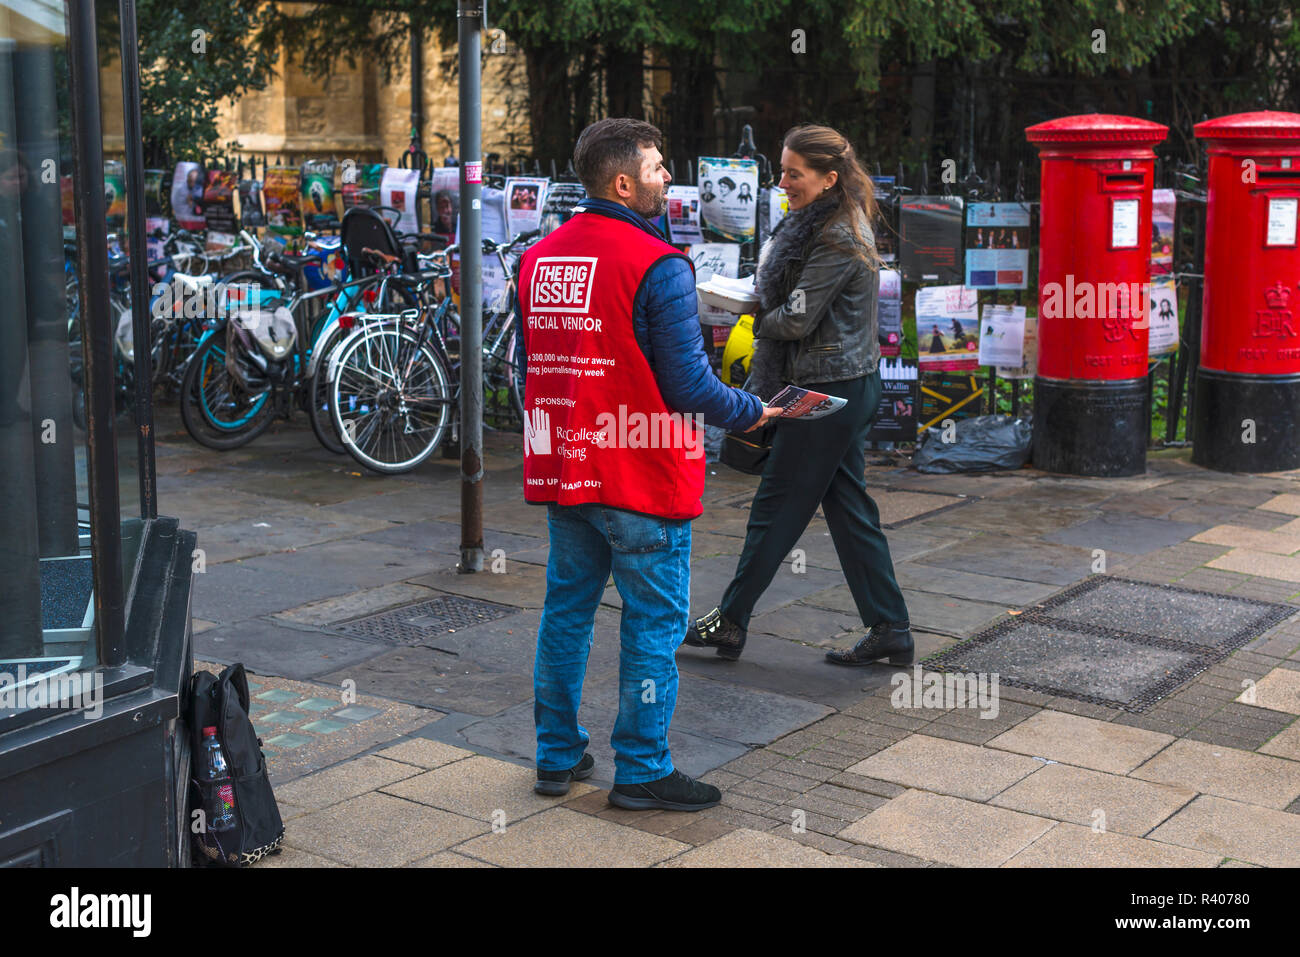 Ein offizieller Anbieter der Grosse Ausgabe Straße Zeitung auf den Straßen von Cambridge, England, UK. Stockfoto